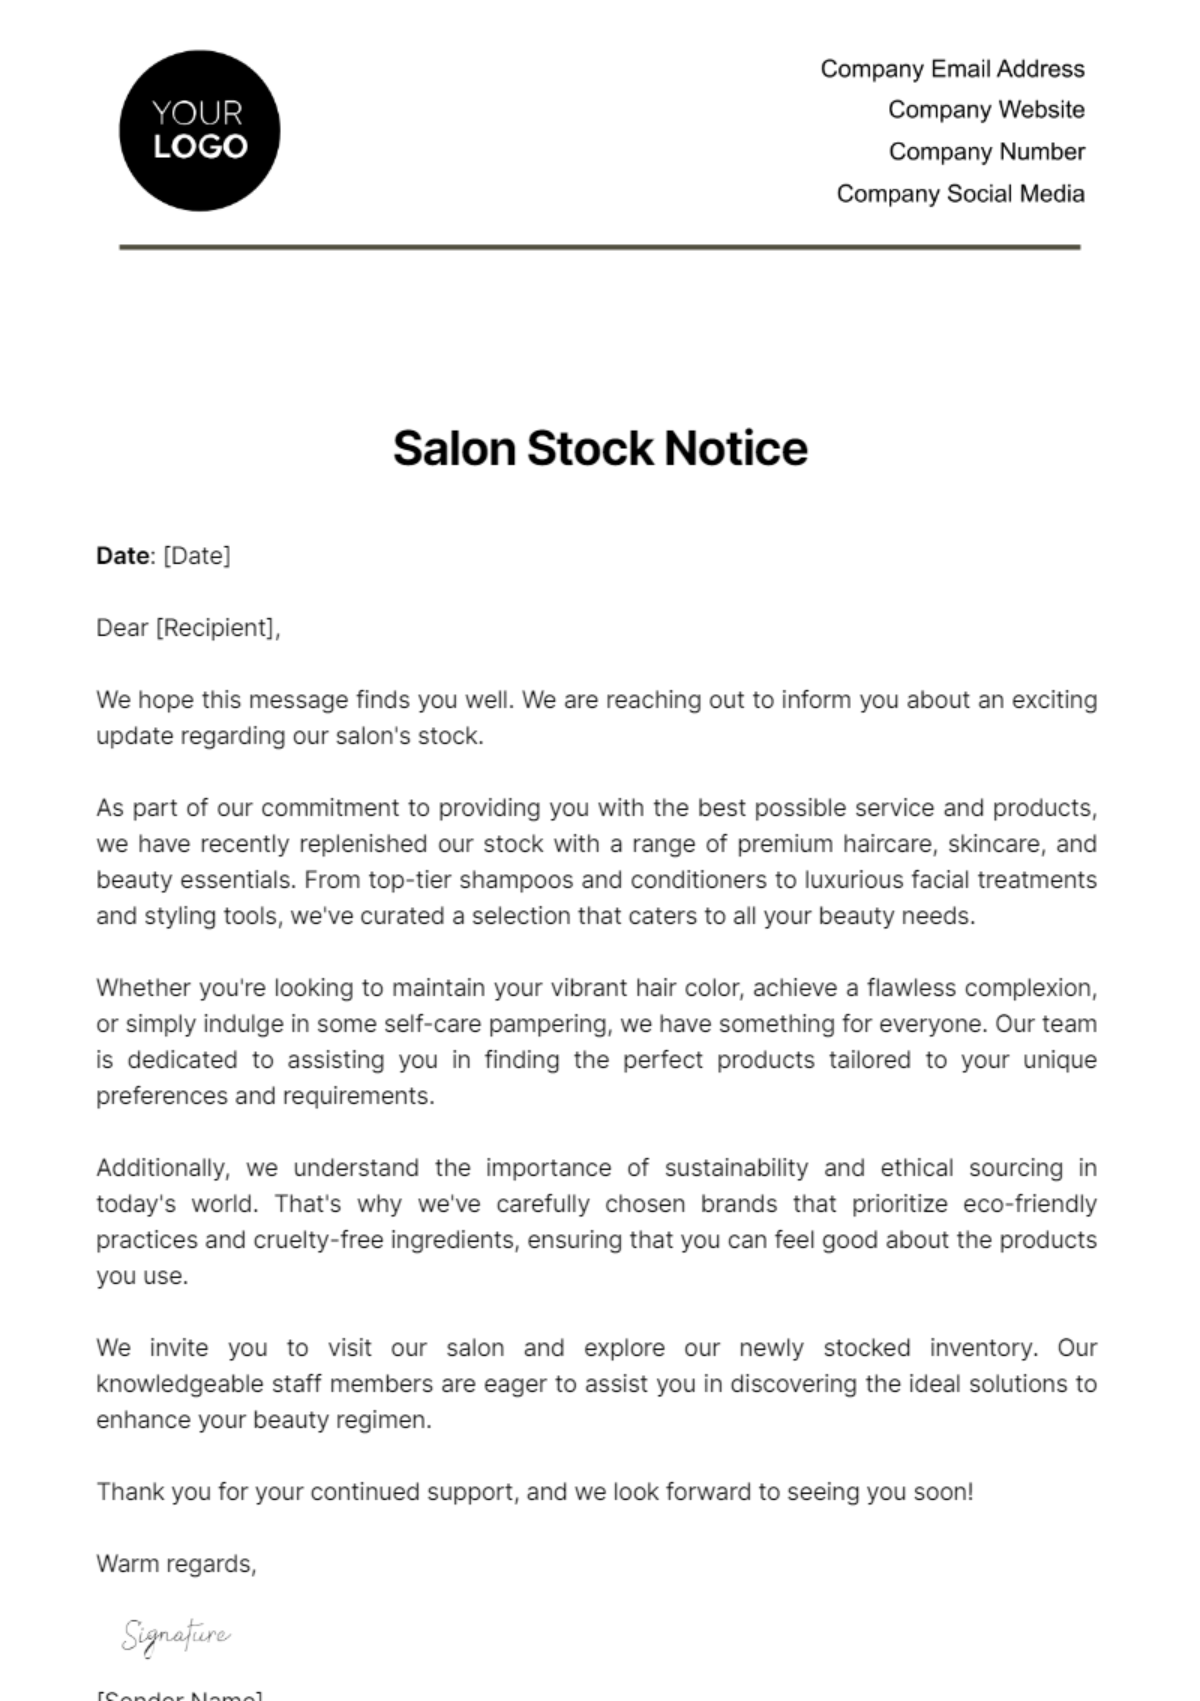 Salon Stock Notice Template